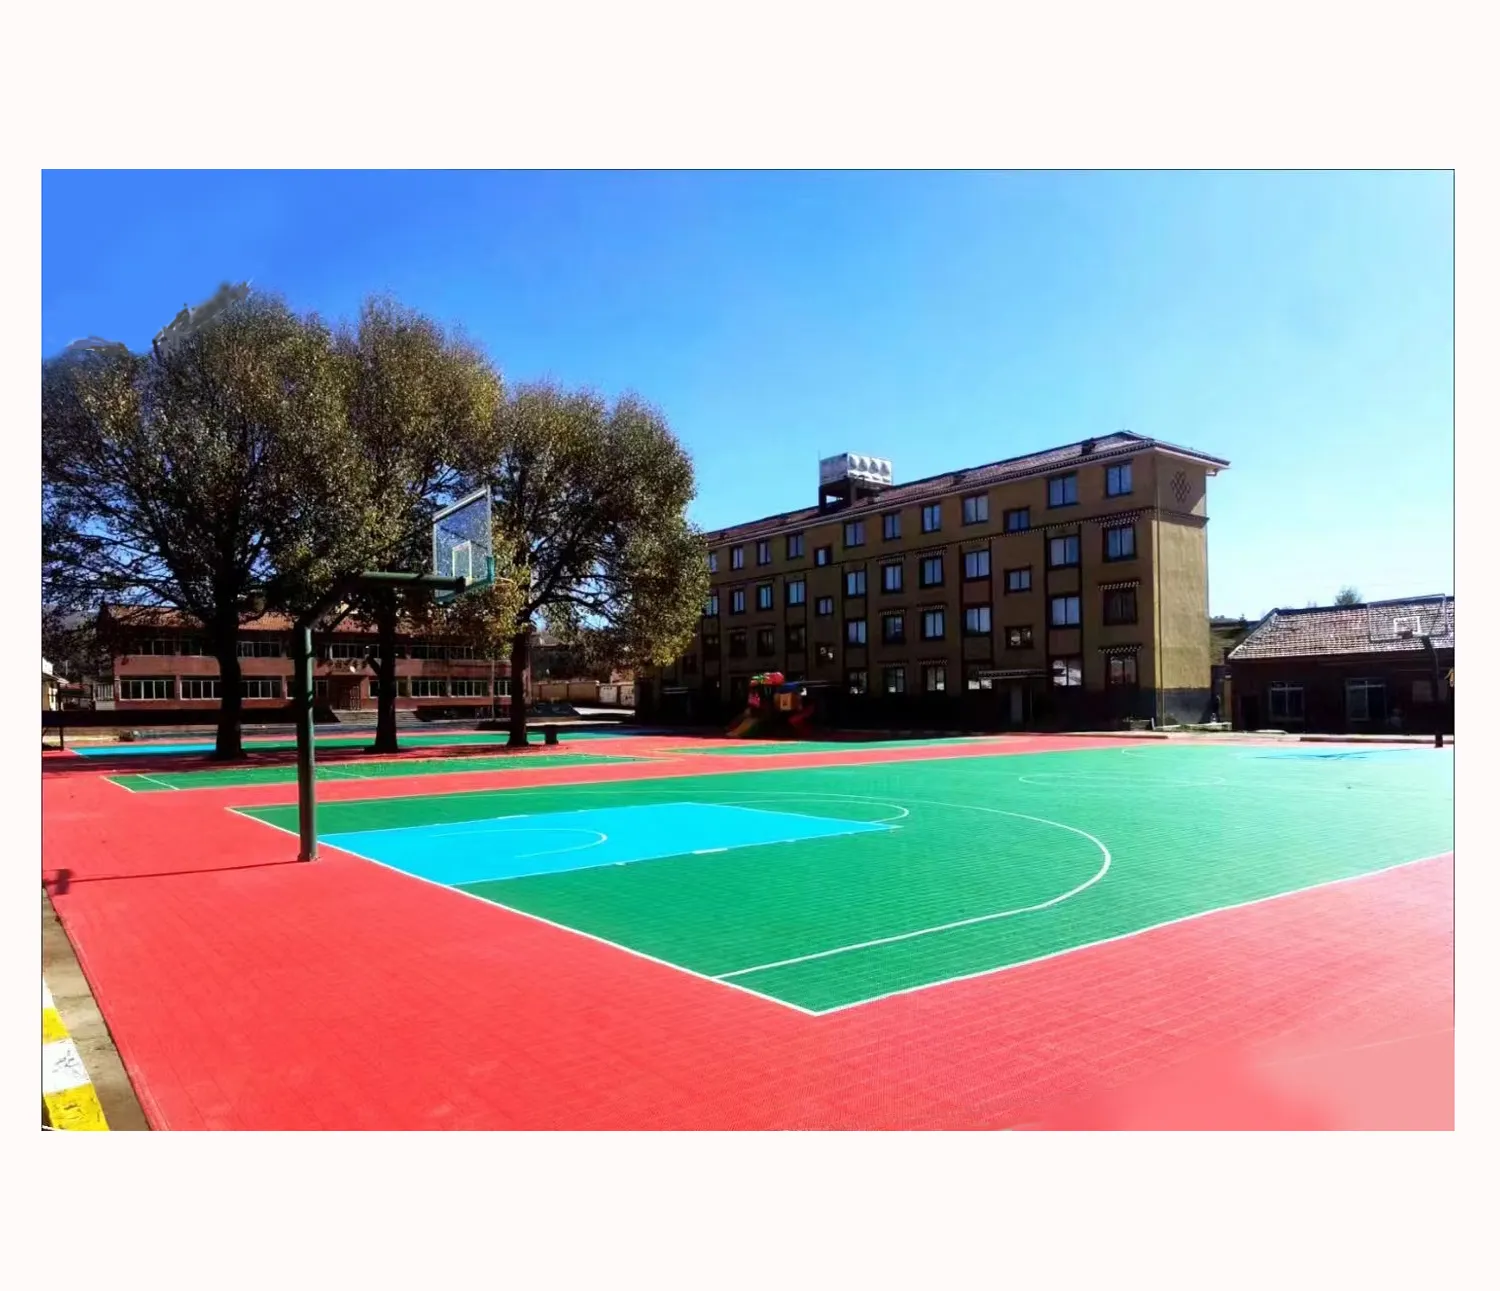 Melhor Preço Plastic Flooring Outdoor Pp Intertravamento Telhas Pickleball Basketball Tênis Tribunal Modular Piso